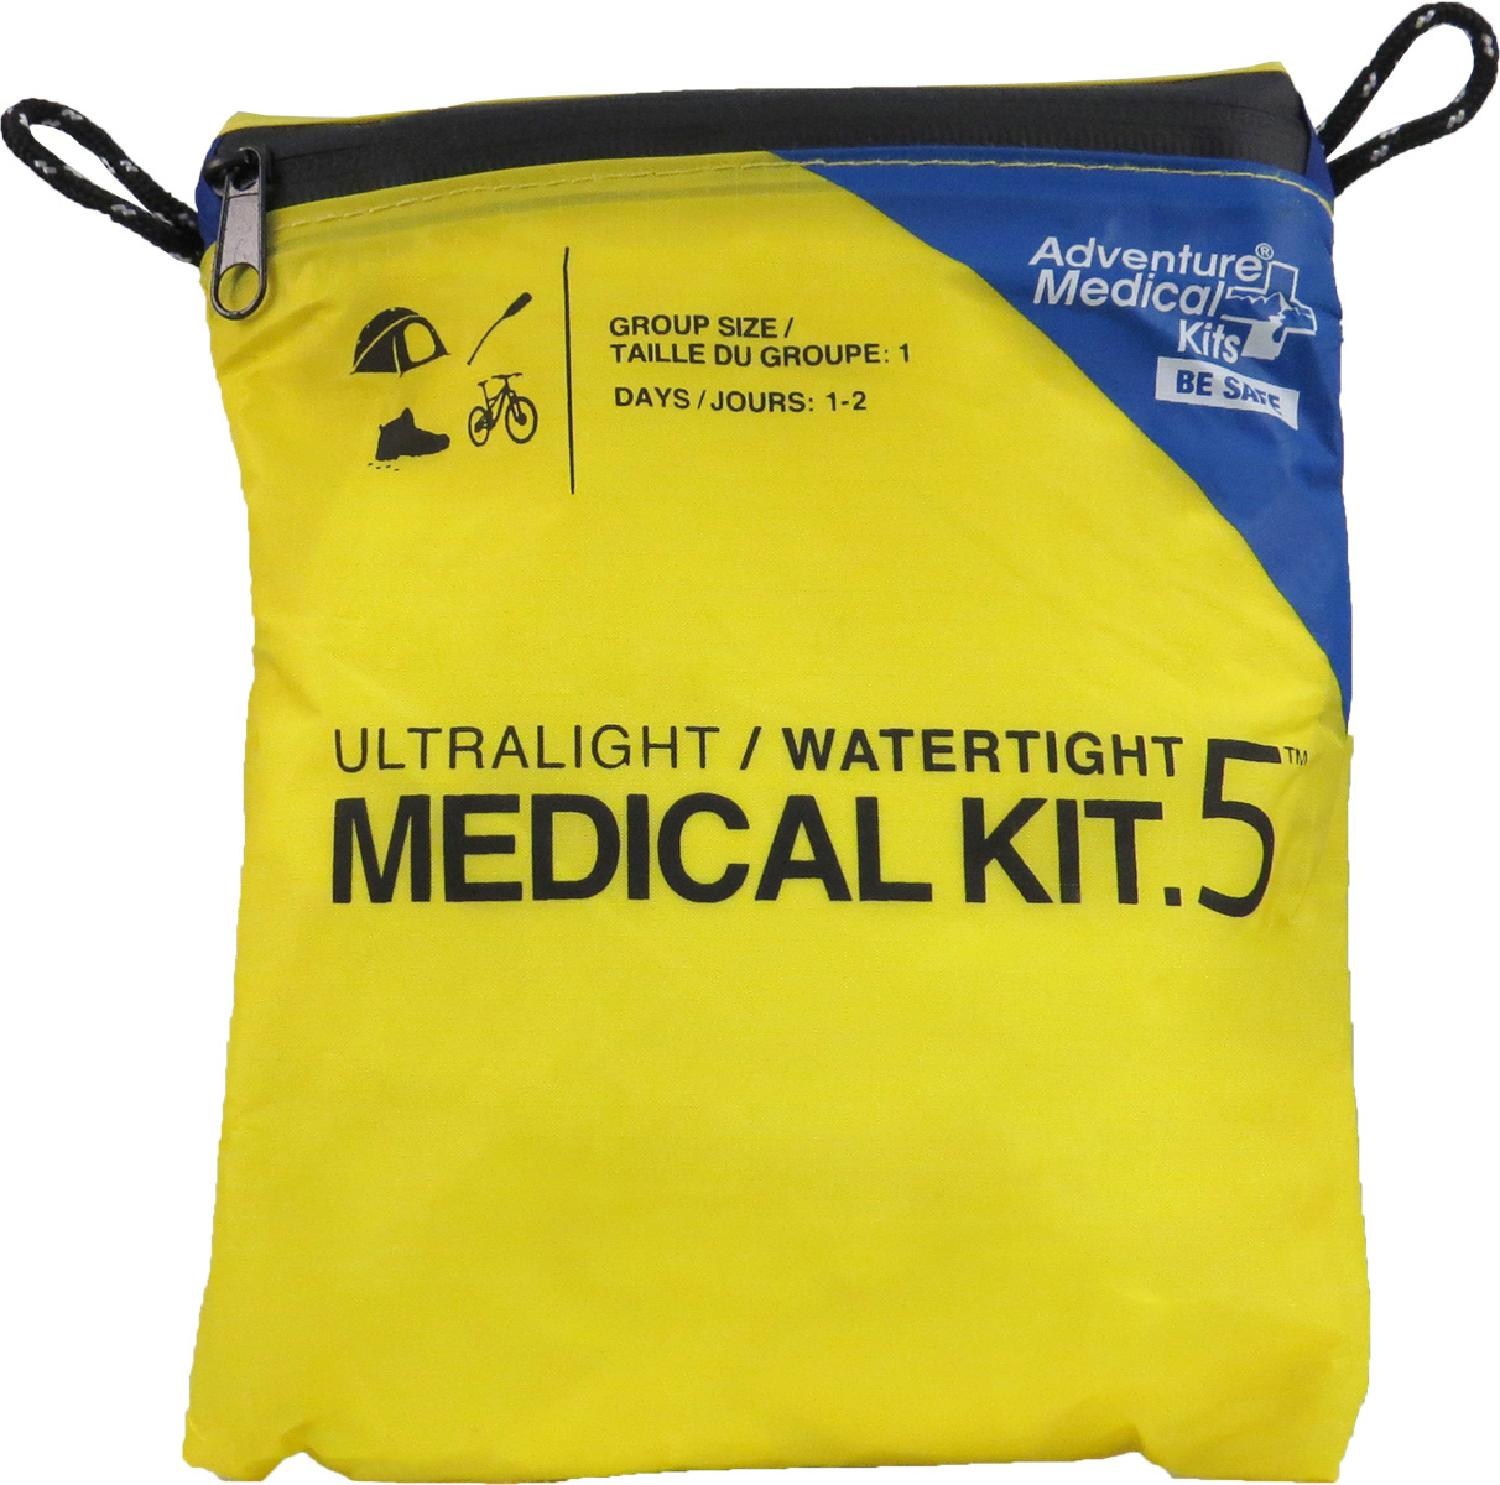 Сверхлегкая/водонепроницаемая медицинская аптечка калибра .5 Adventure Medical Kits медицинский набор для альпинистов серии mountain adventure medical kits синий